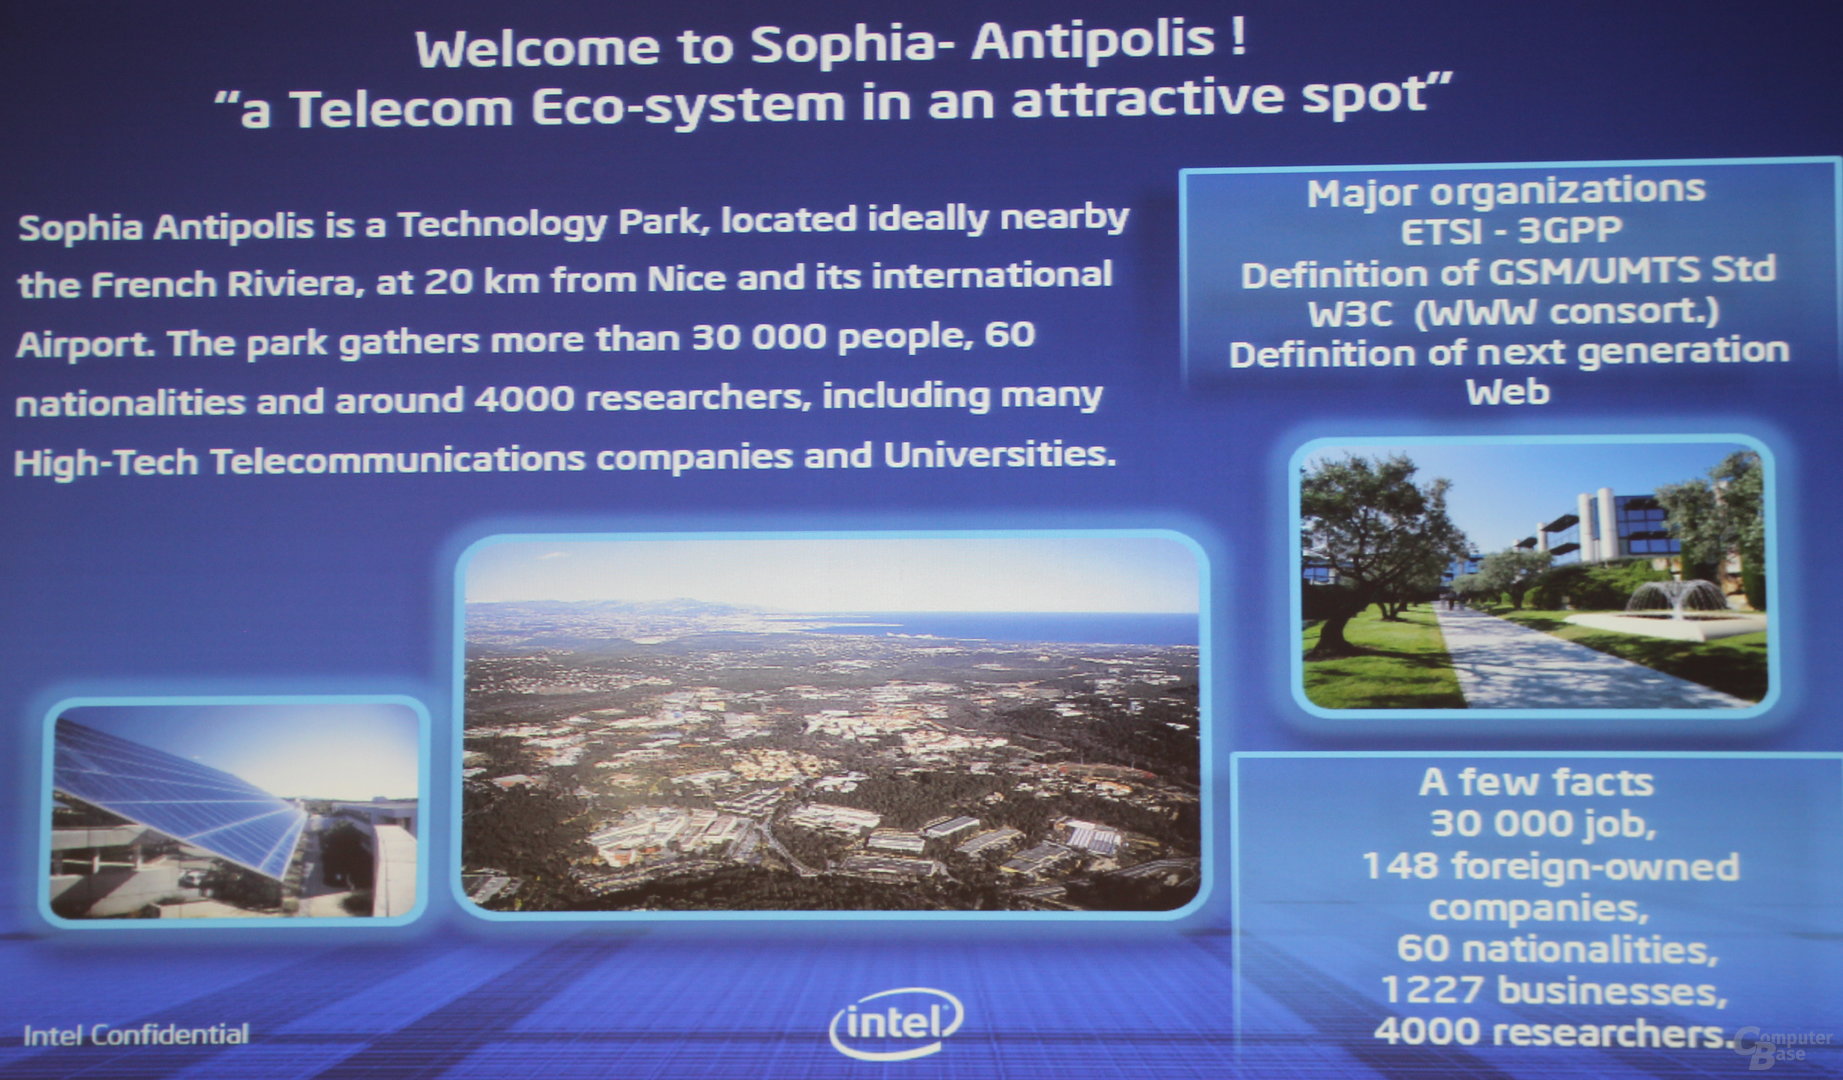 Intel Labs in Sophia Antipolis